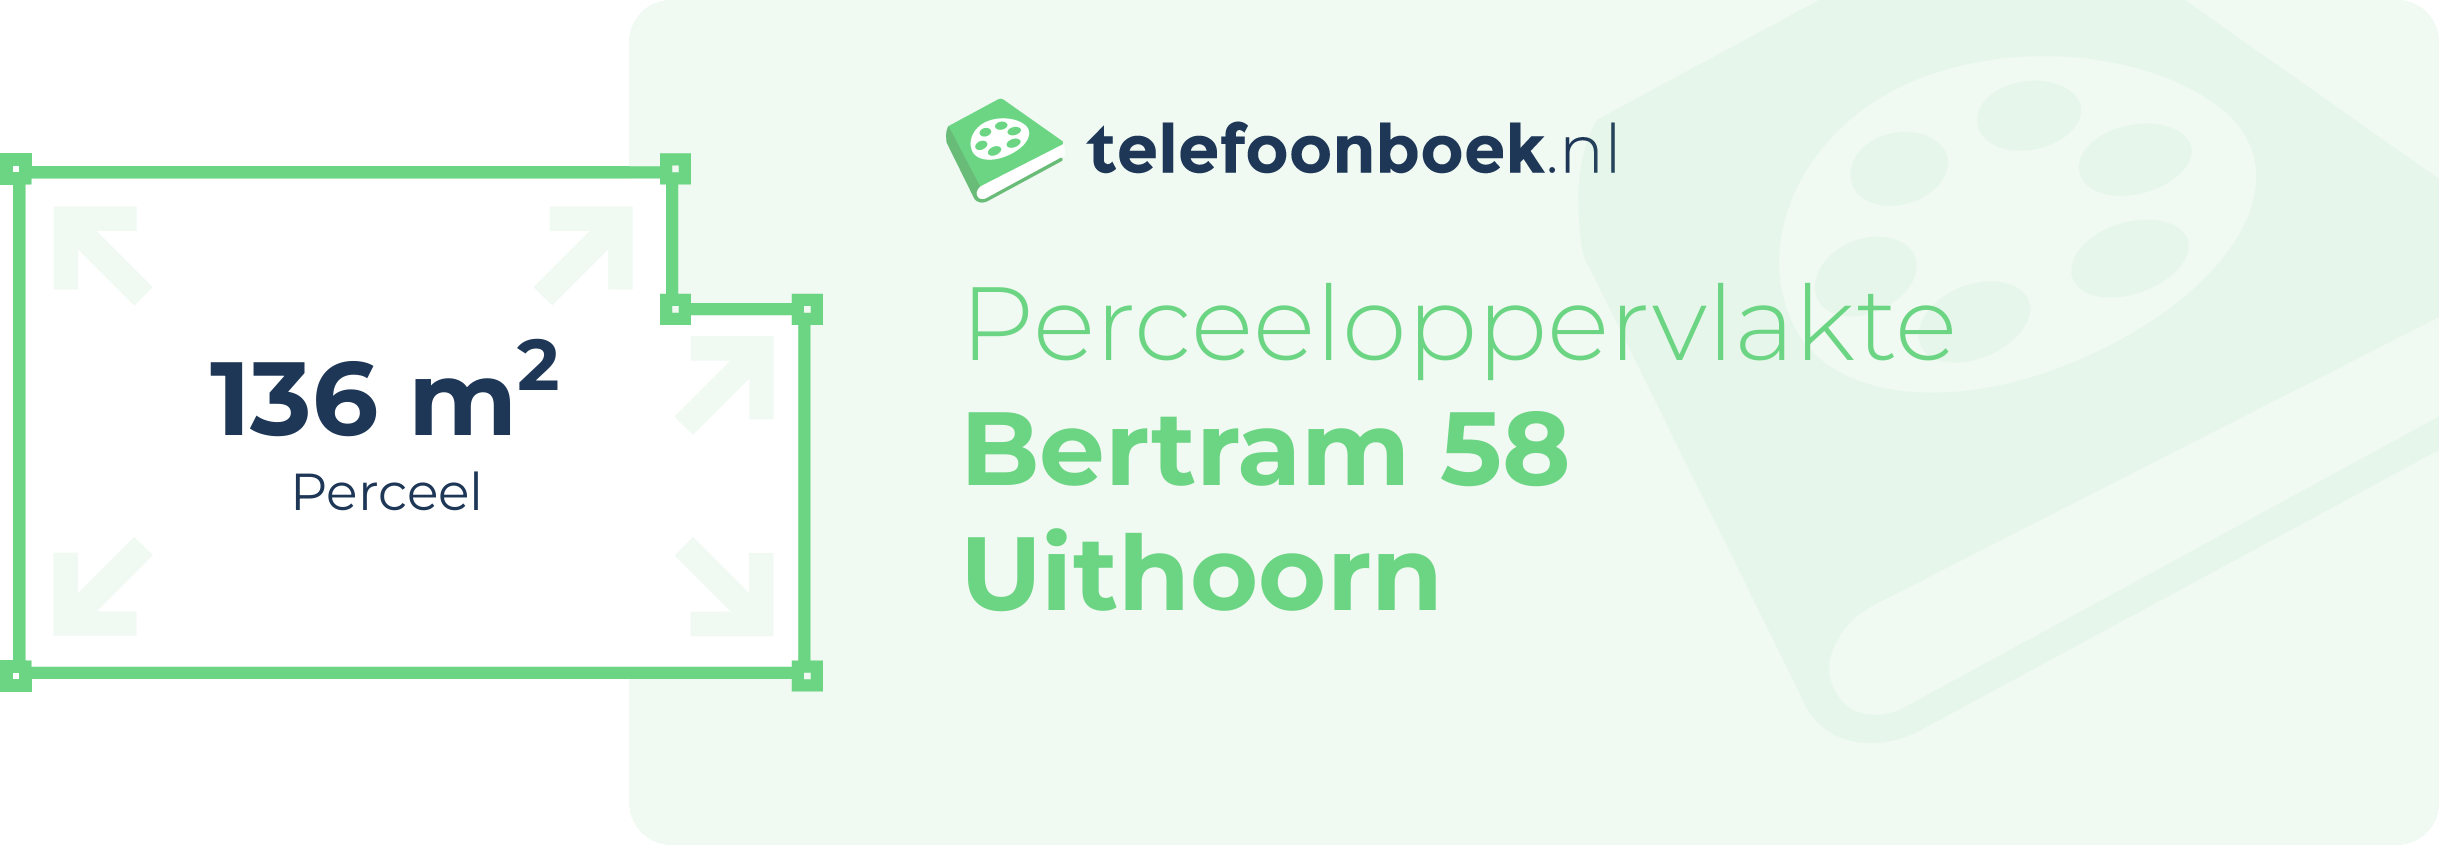 Perceeloppervlakte Bertram 58 Uithoorn